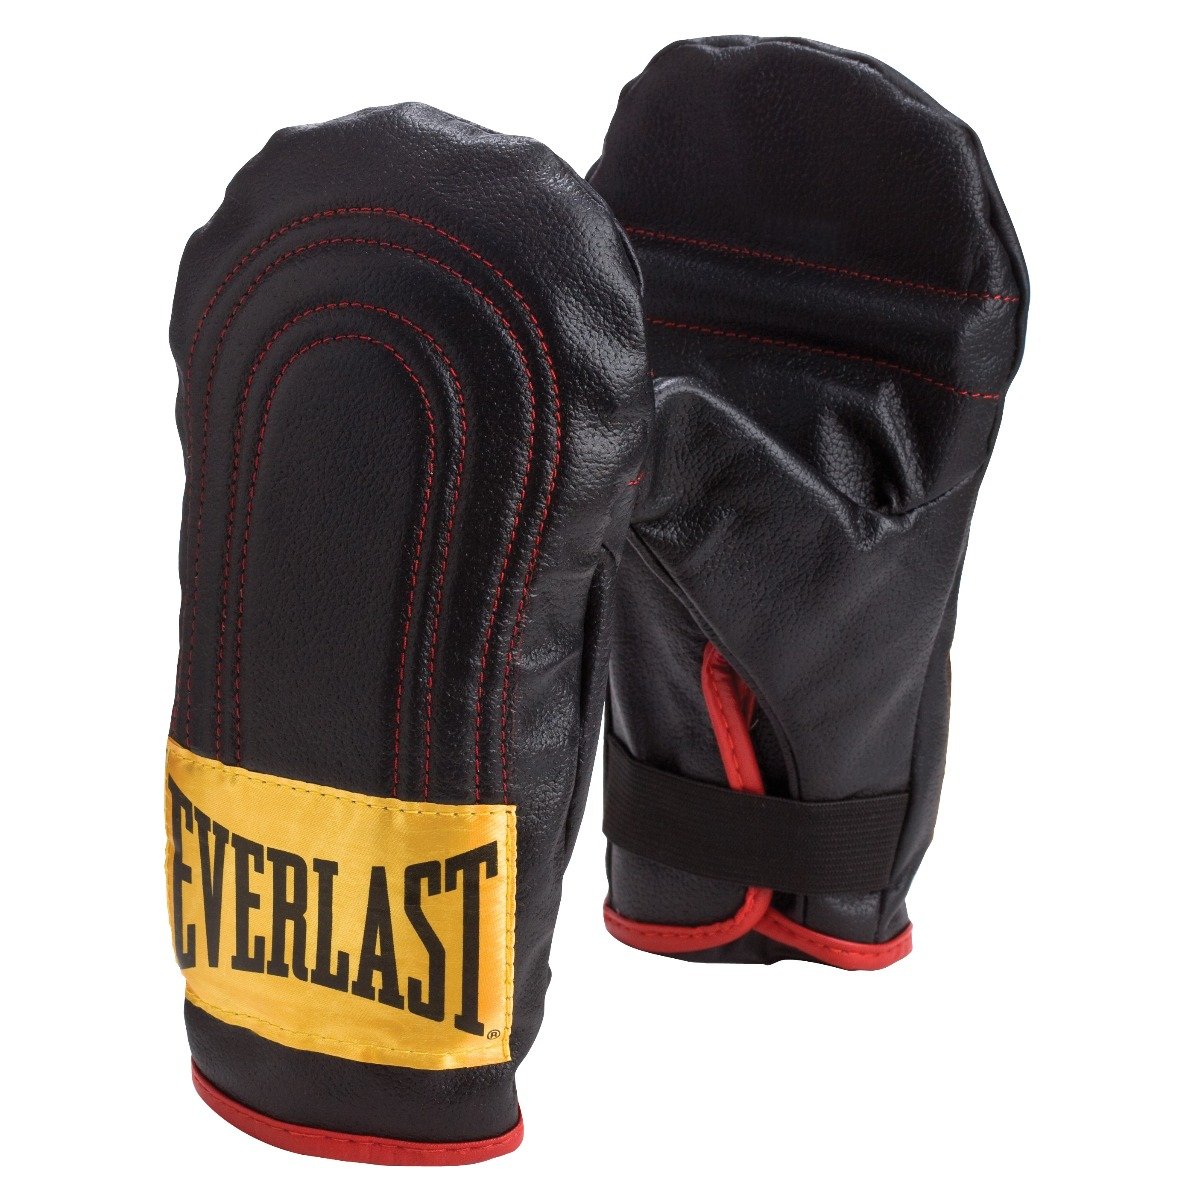 40lb Martial Arts Heavy Bag Kit